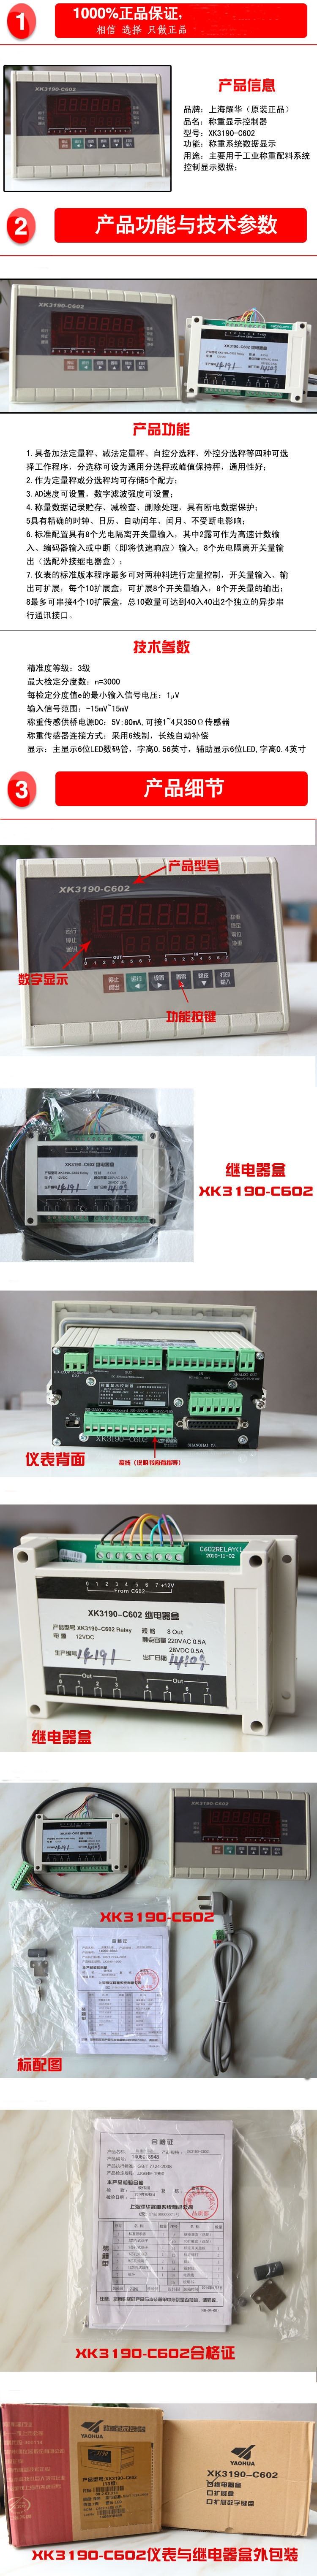 上海耀华XK3190-C602